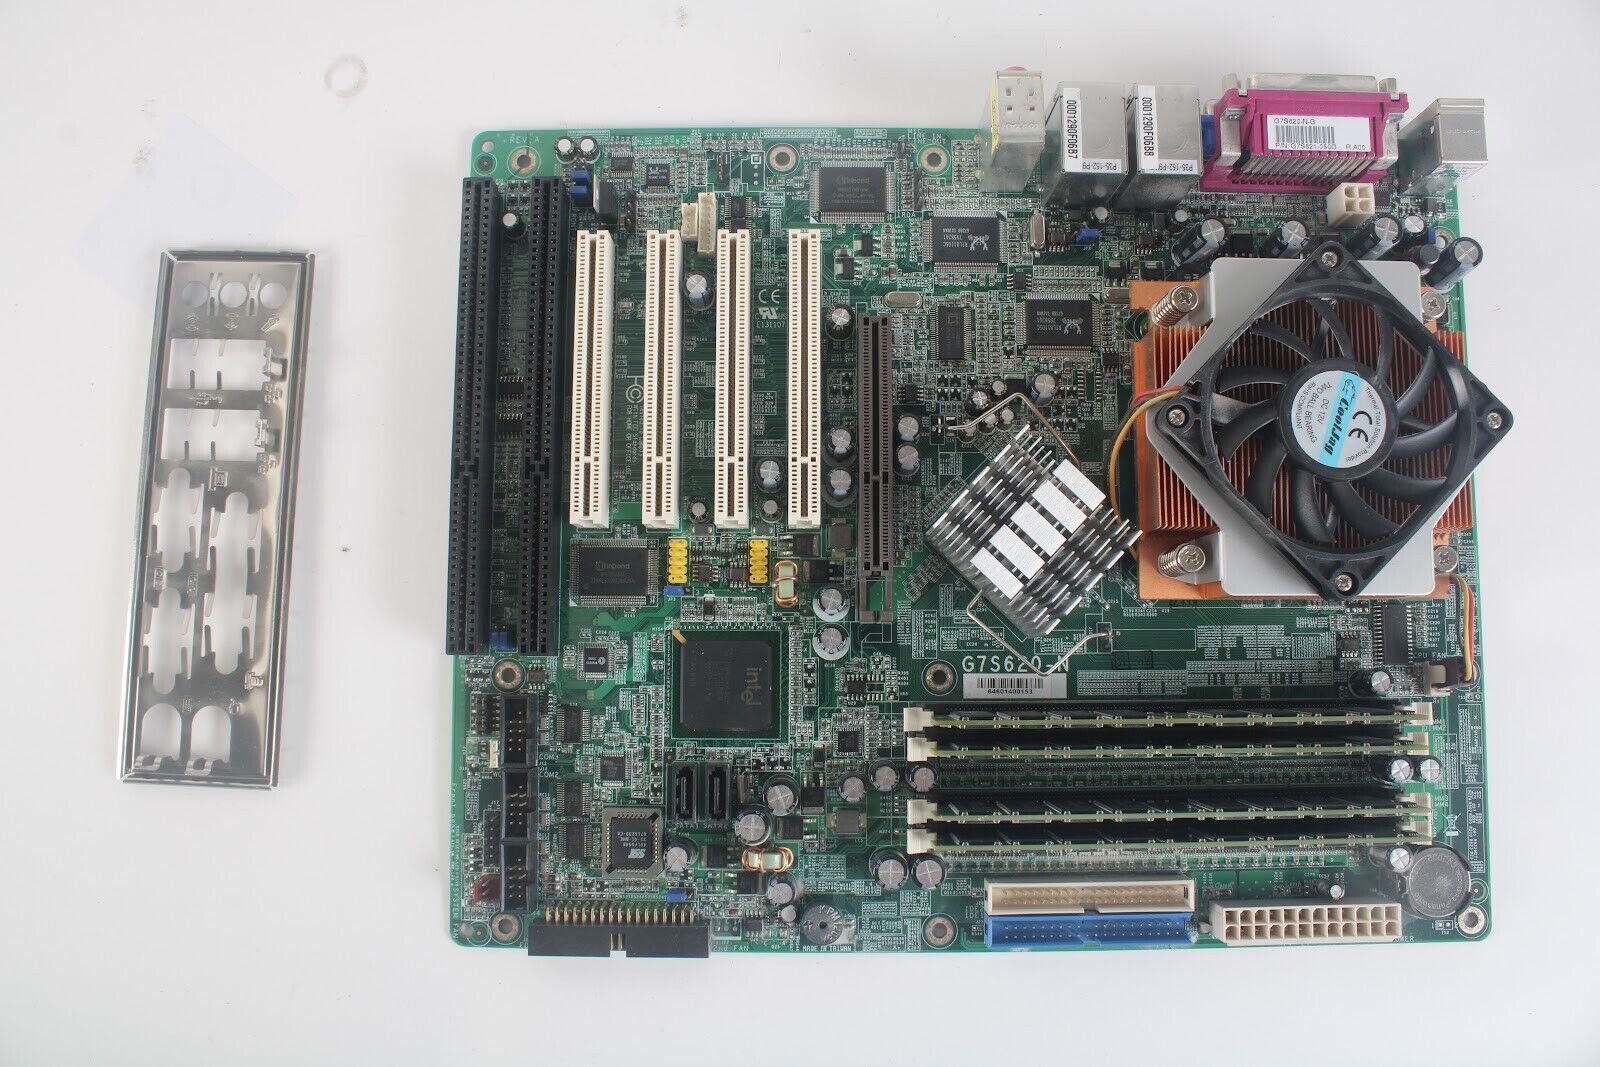 DFI G7S620-N MotherBoard / Pentium 4 @ 3.4GHz / 4GB DDR 400 W/ I/O Shield